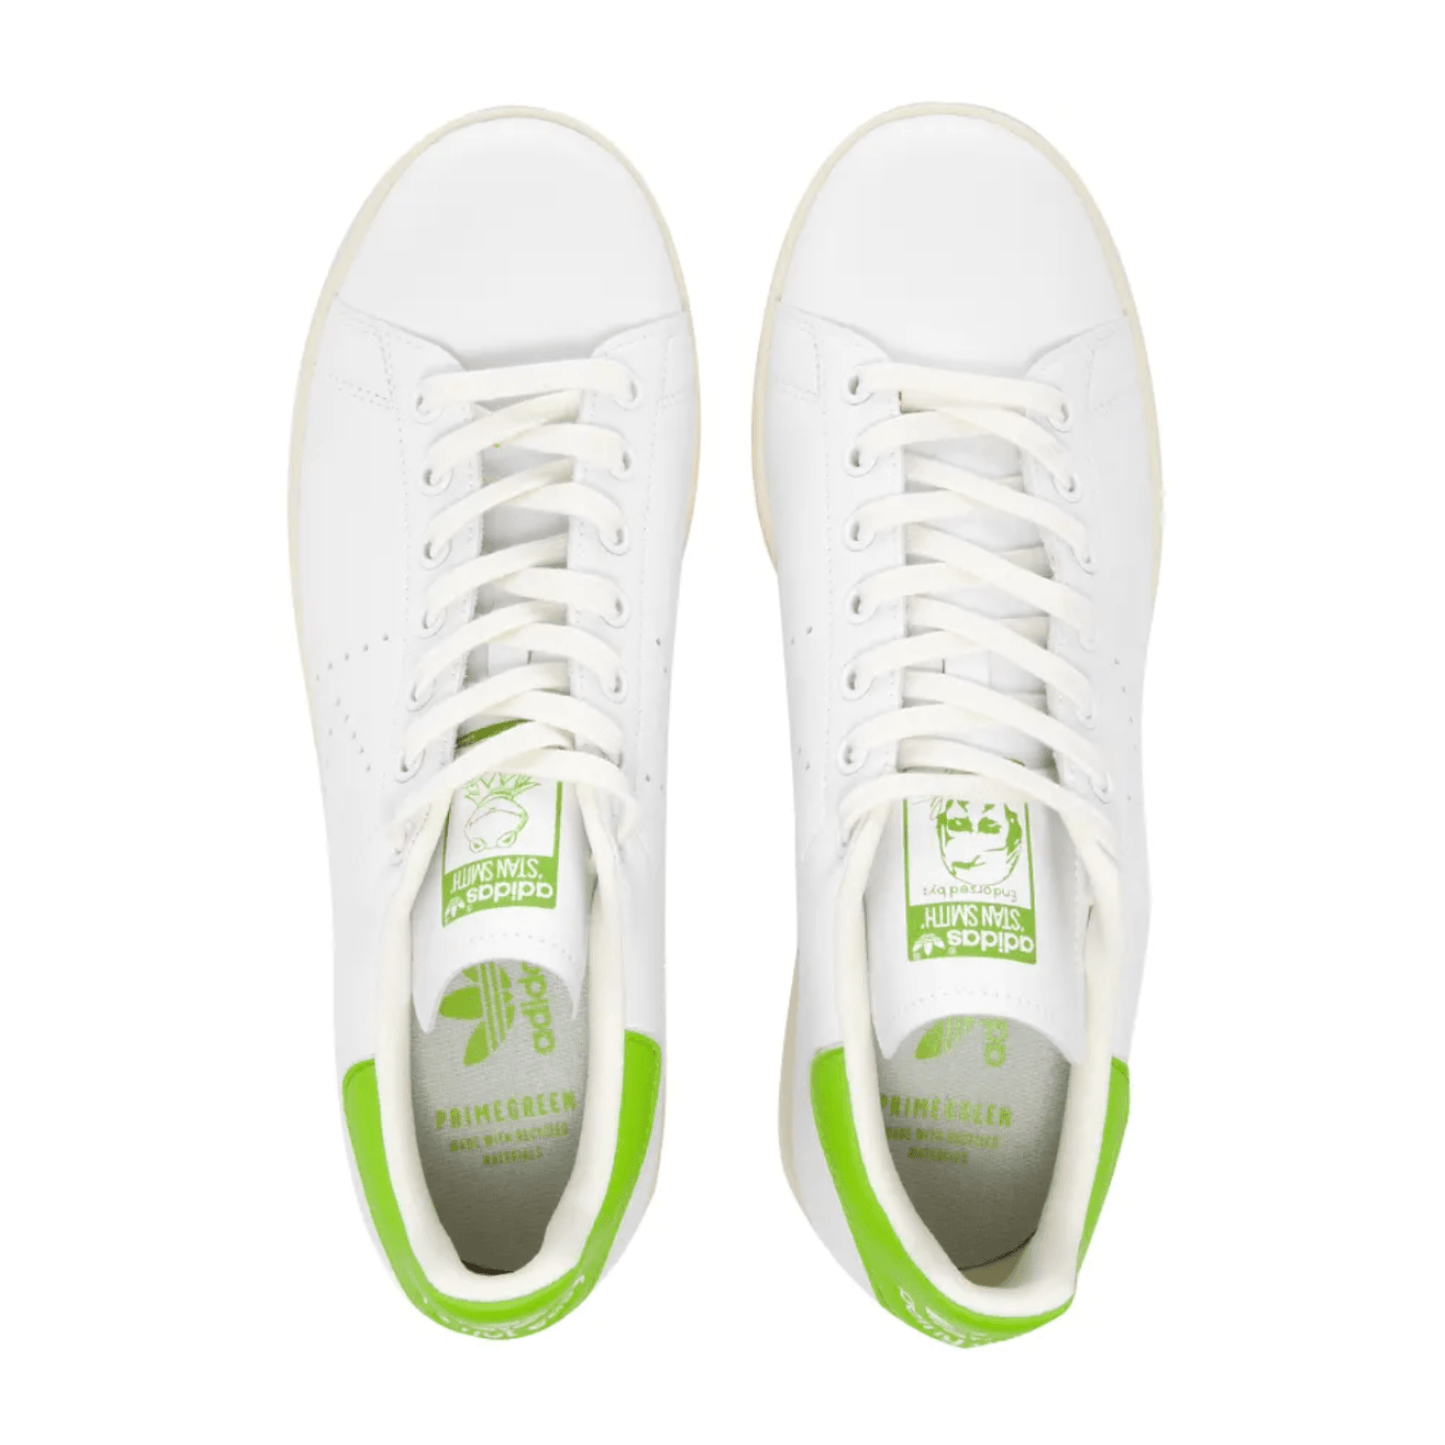 Adidas Stan Smith x Kermit The Frog 'White Green' - FRESNEAKERS